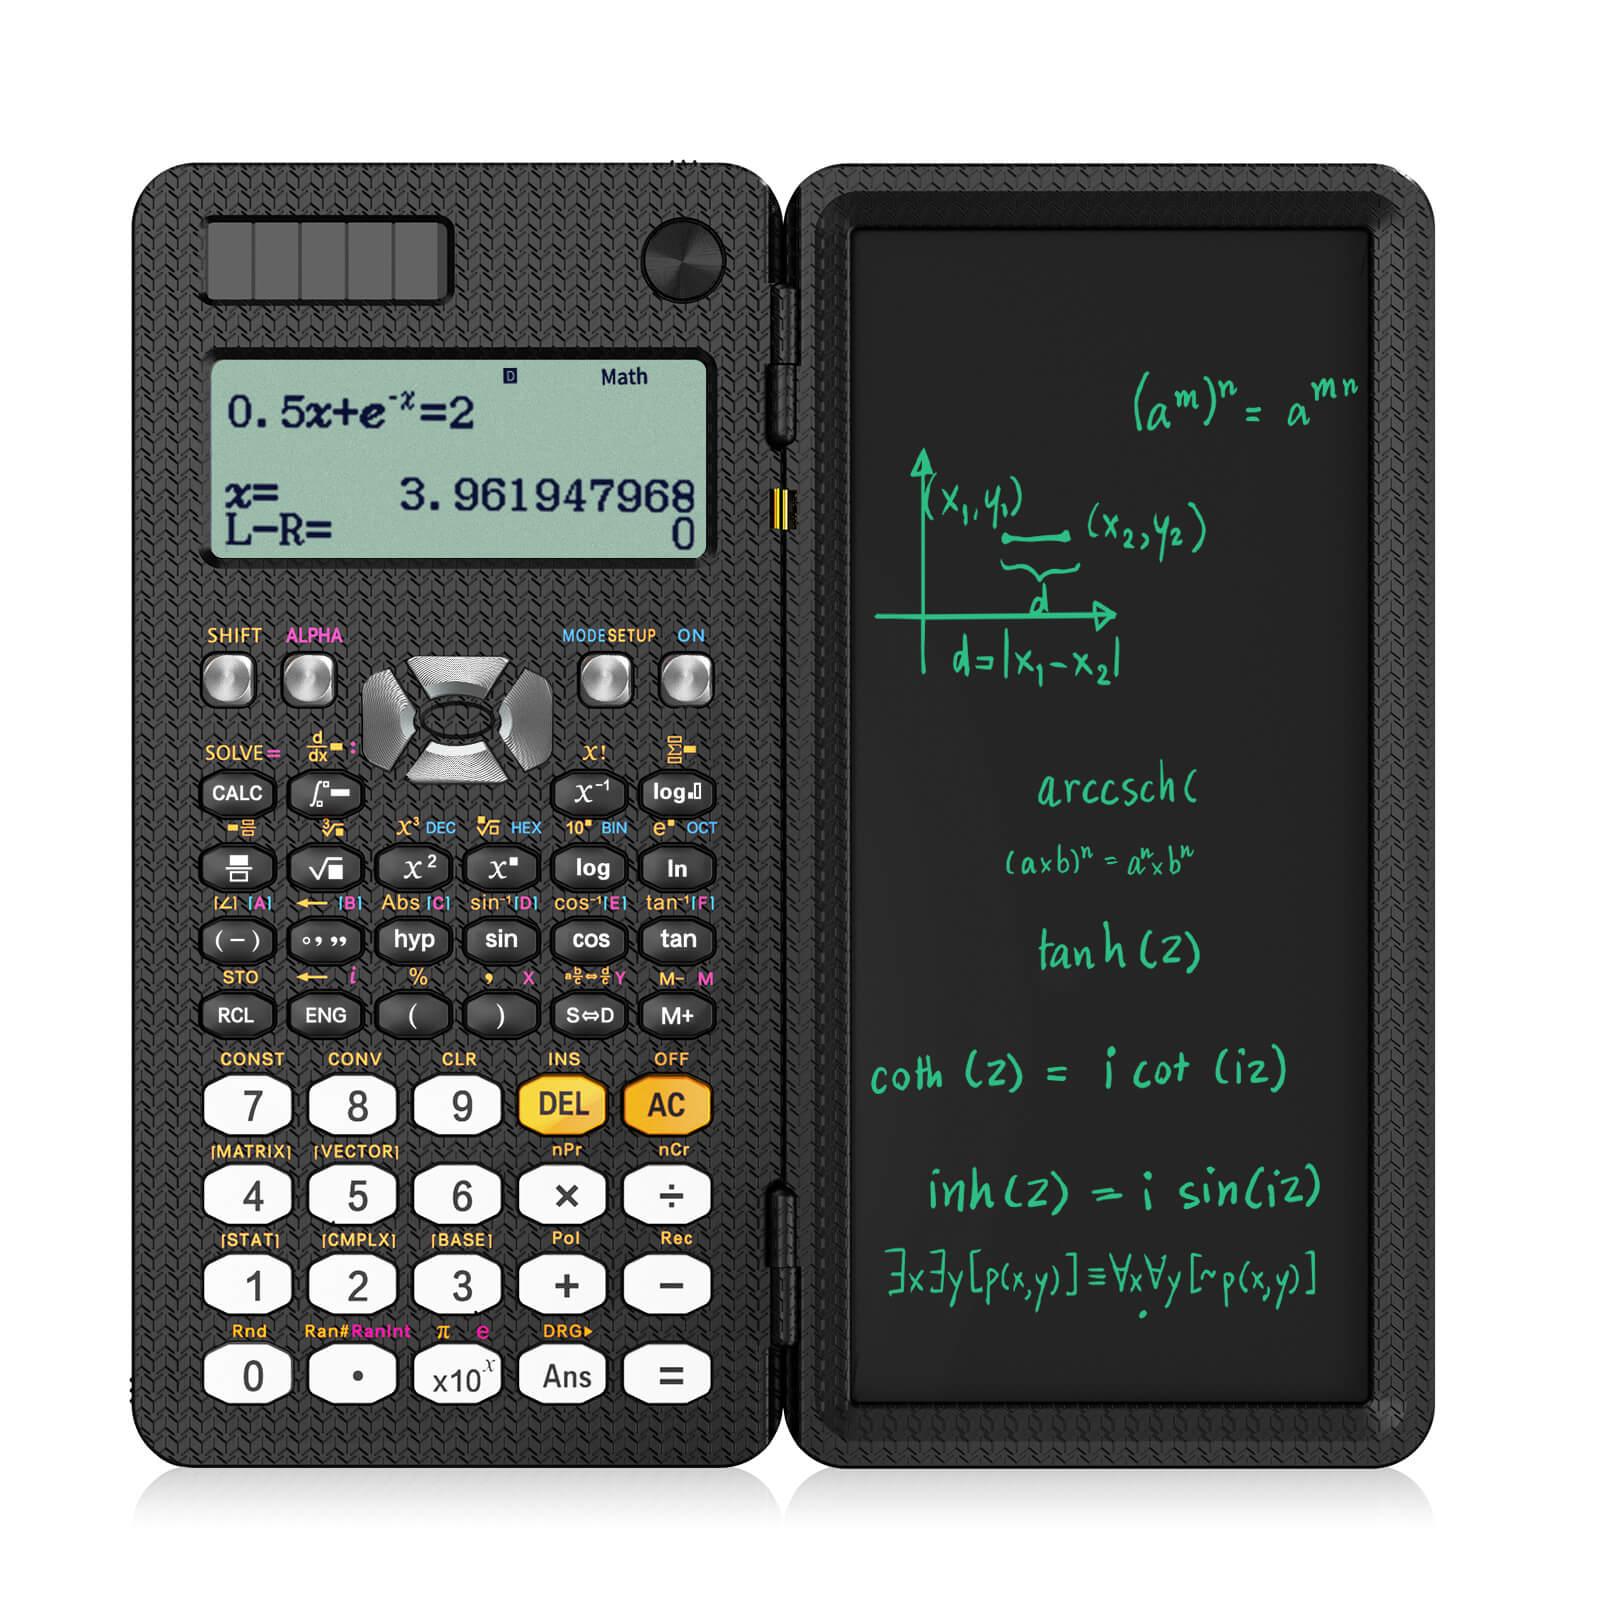 اله حاسبه علميه مع لوح كتابه ال سي دي Newyes Scientific Calculator with Erasable LCD Writing Tablet - cG9zdDoxMzM4Nzcy